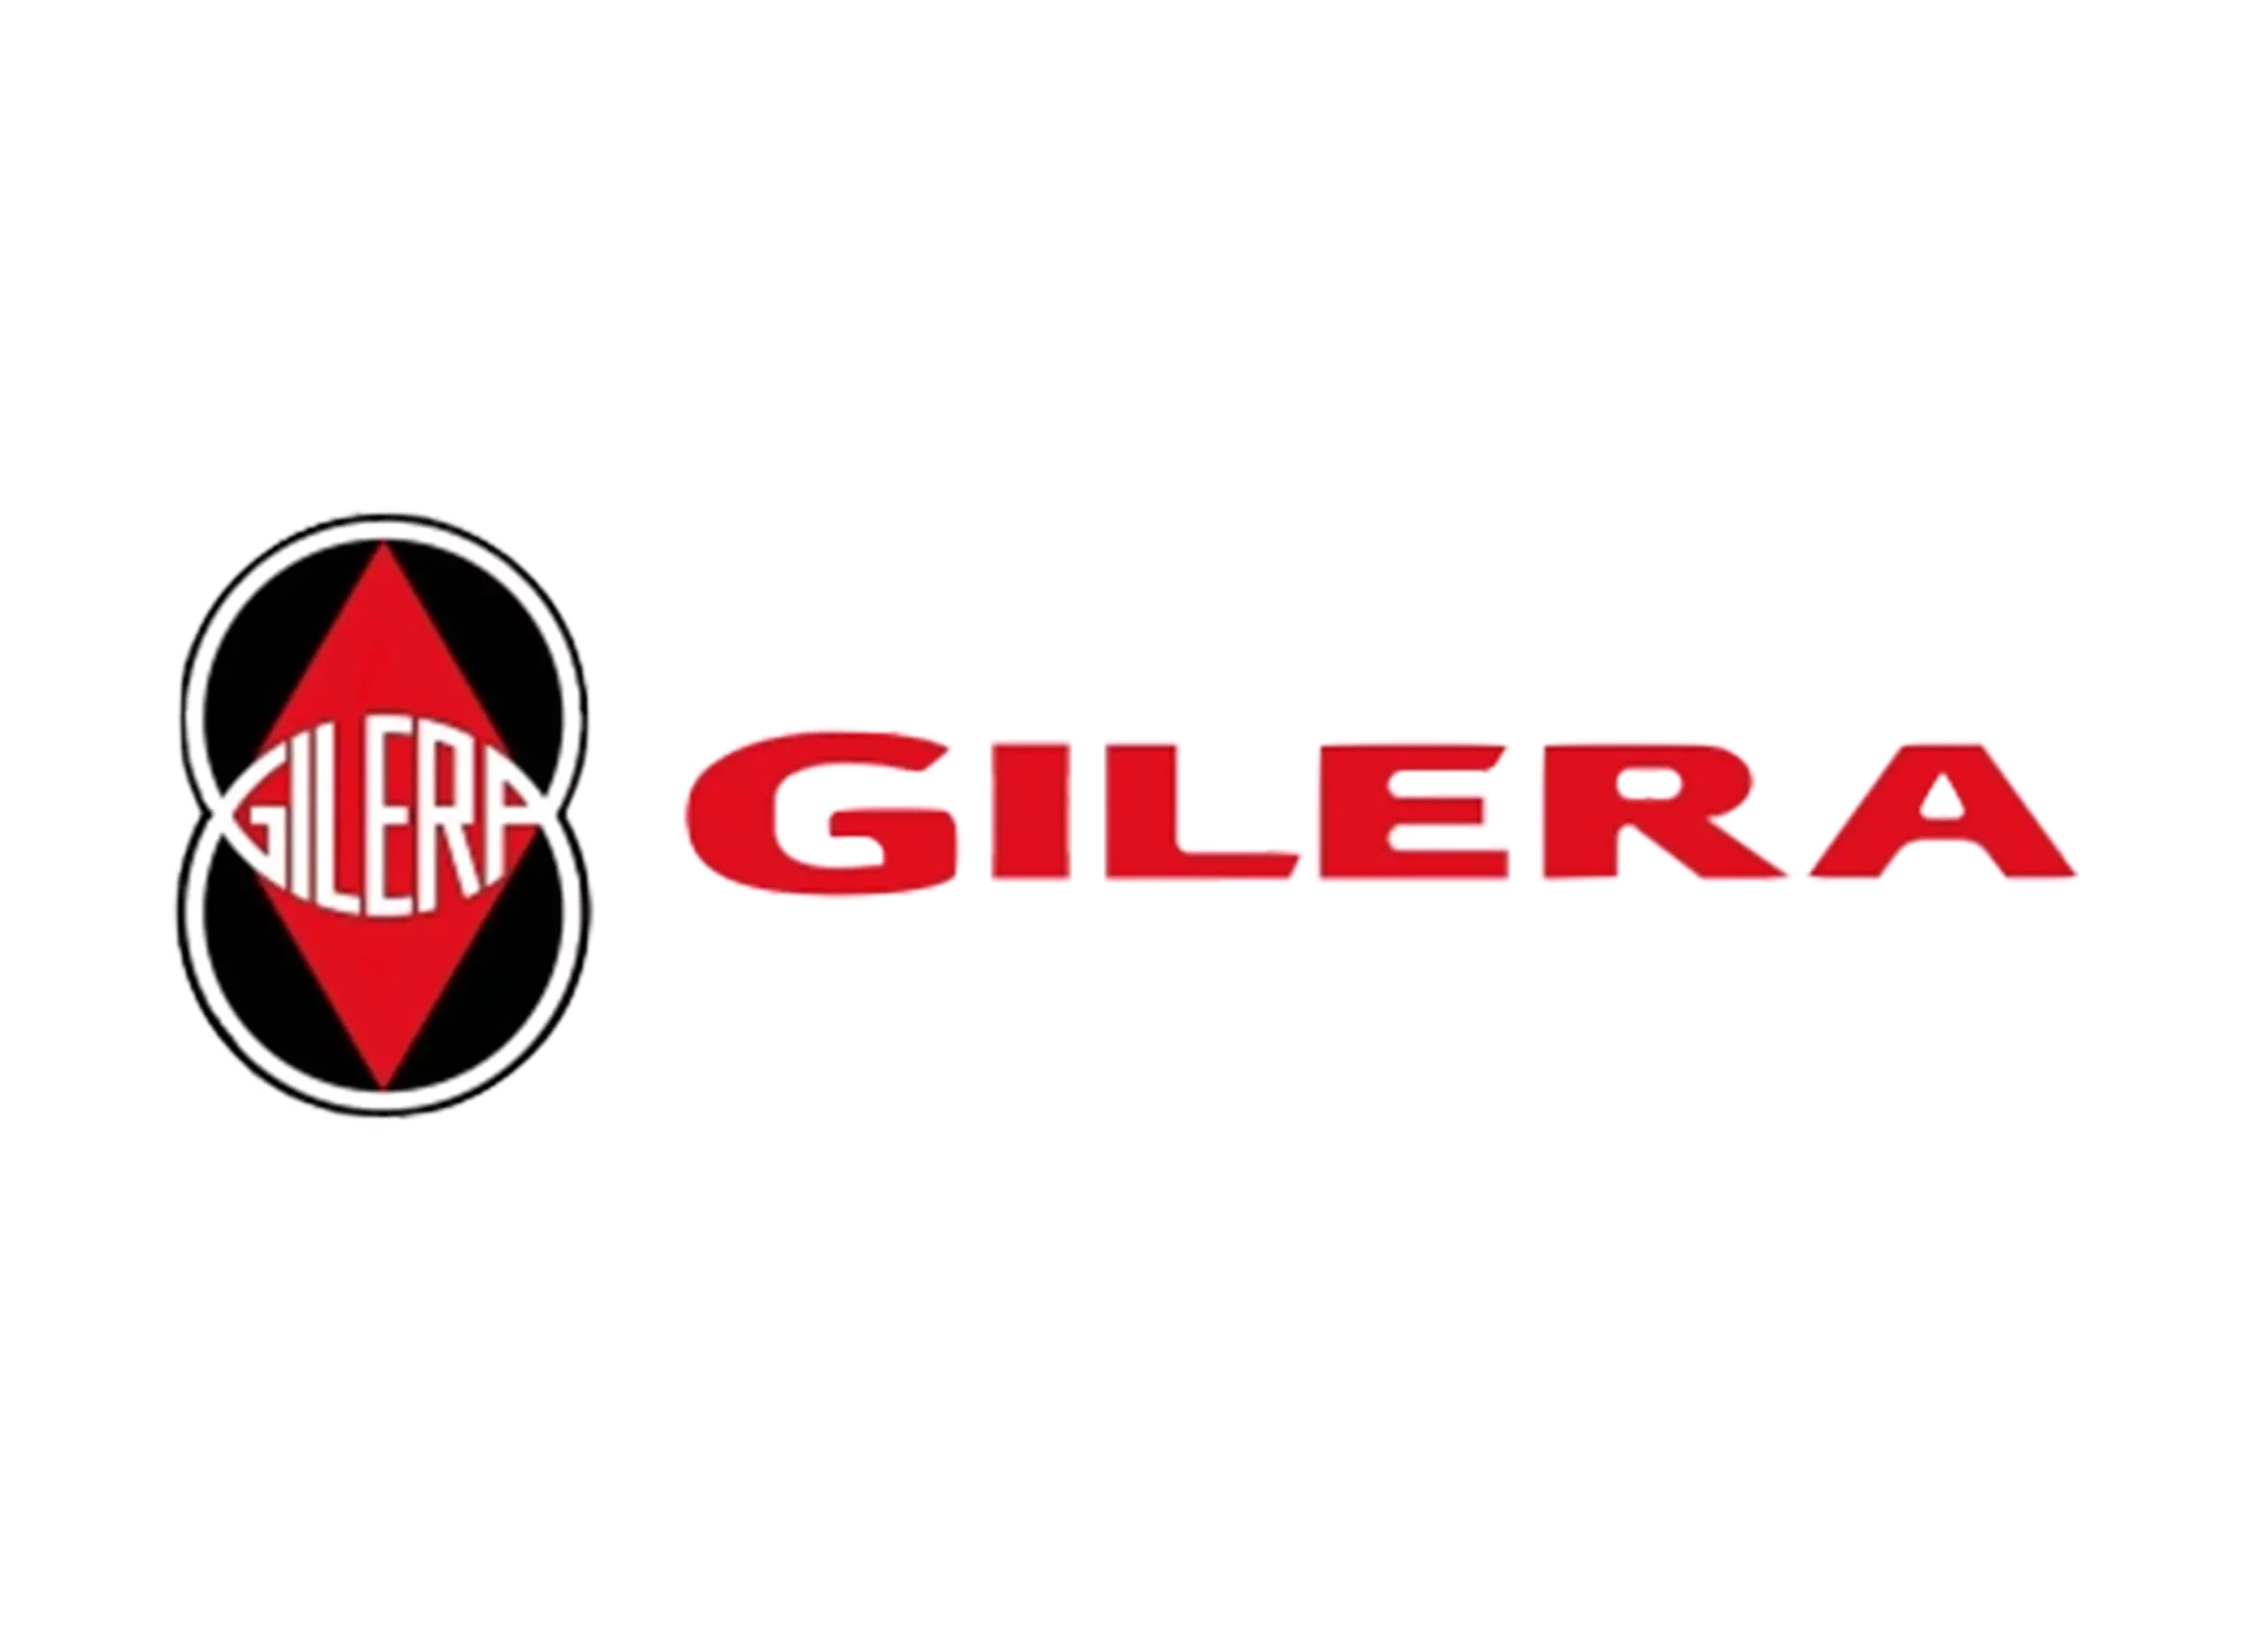 Gilera logo